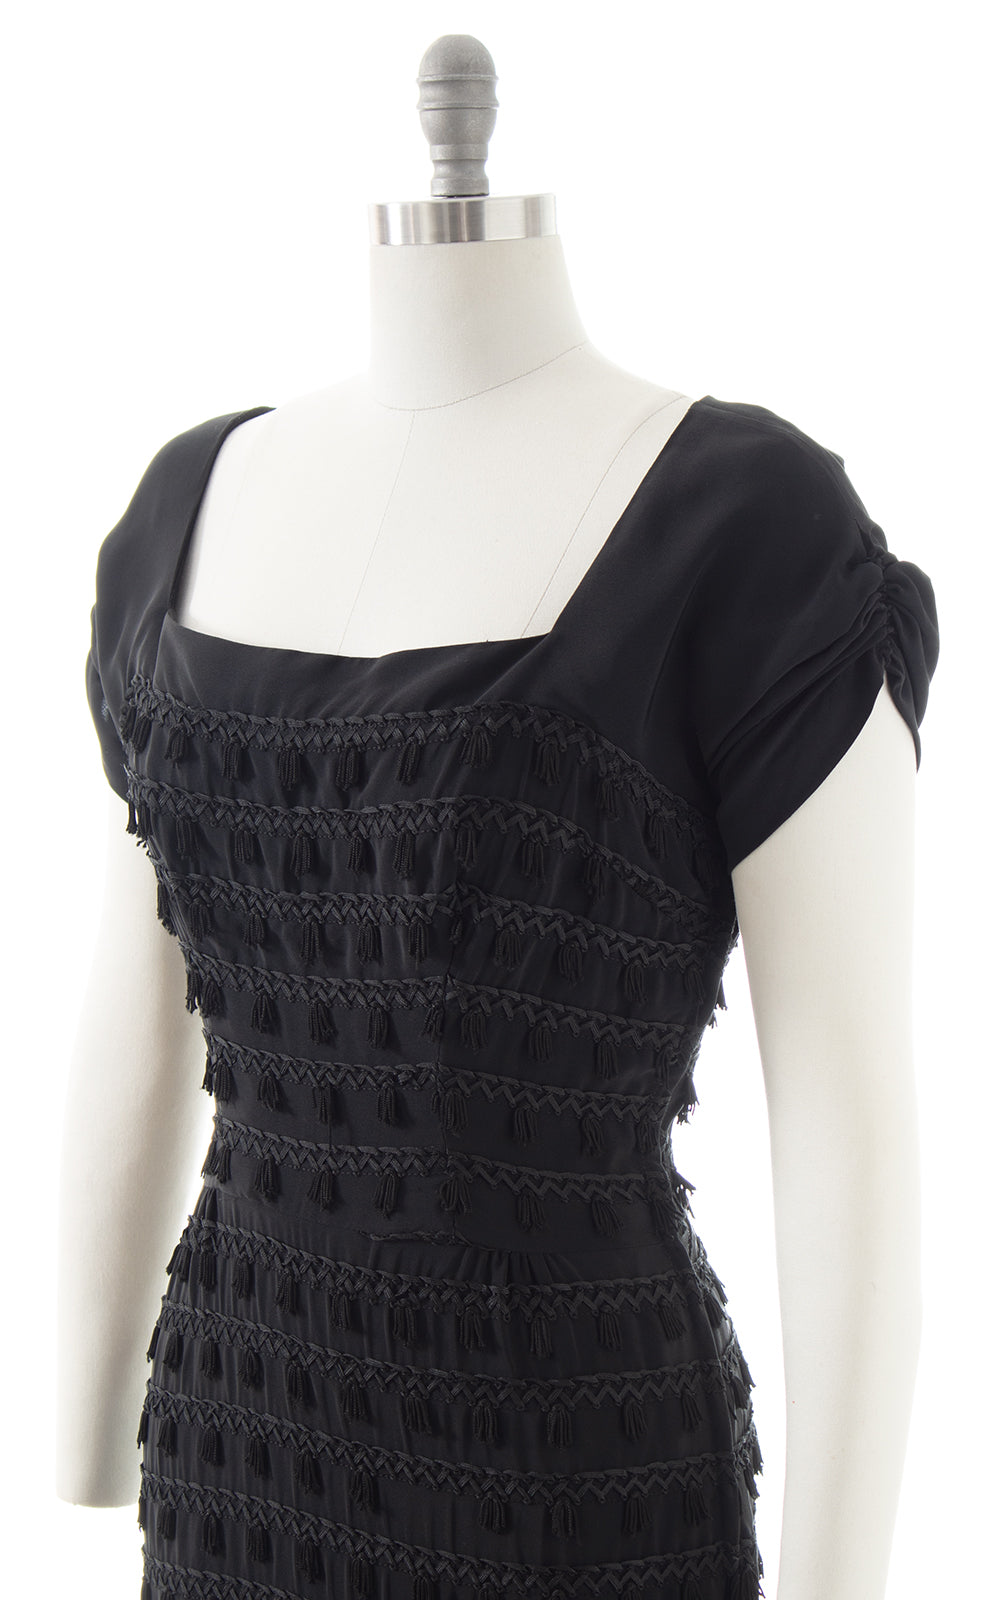 1940s 1950s Black Rayon Tassels Party Dress | small/medium